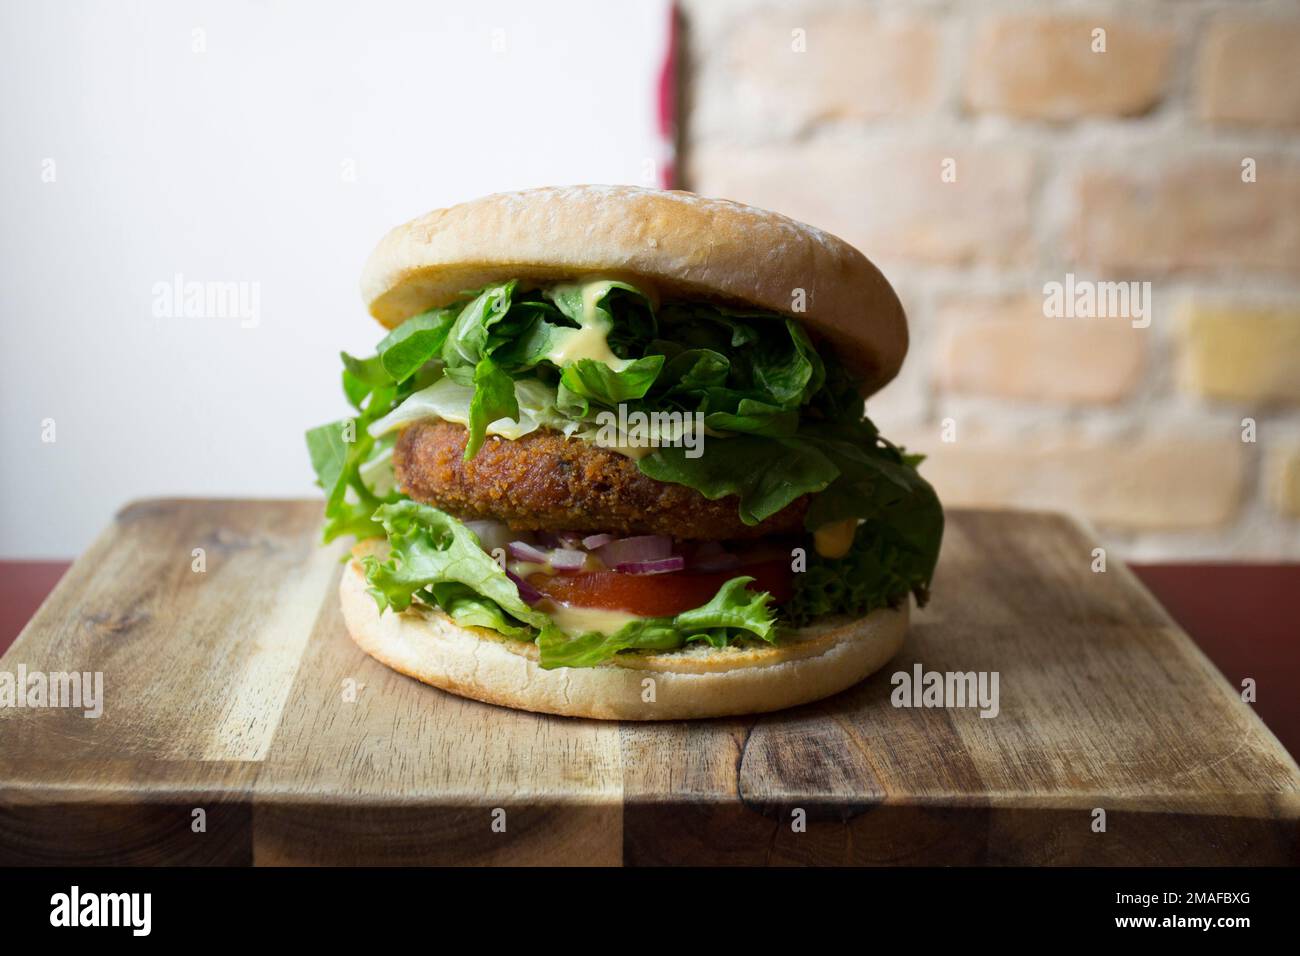 Hamburger végétarien préparé avec un mélange de légumes et de produits tels que le tofu ou le seitan. Banque D'Images